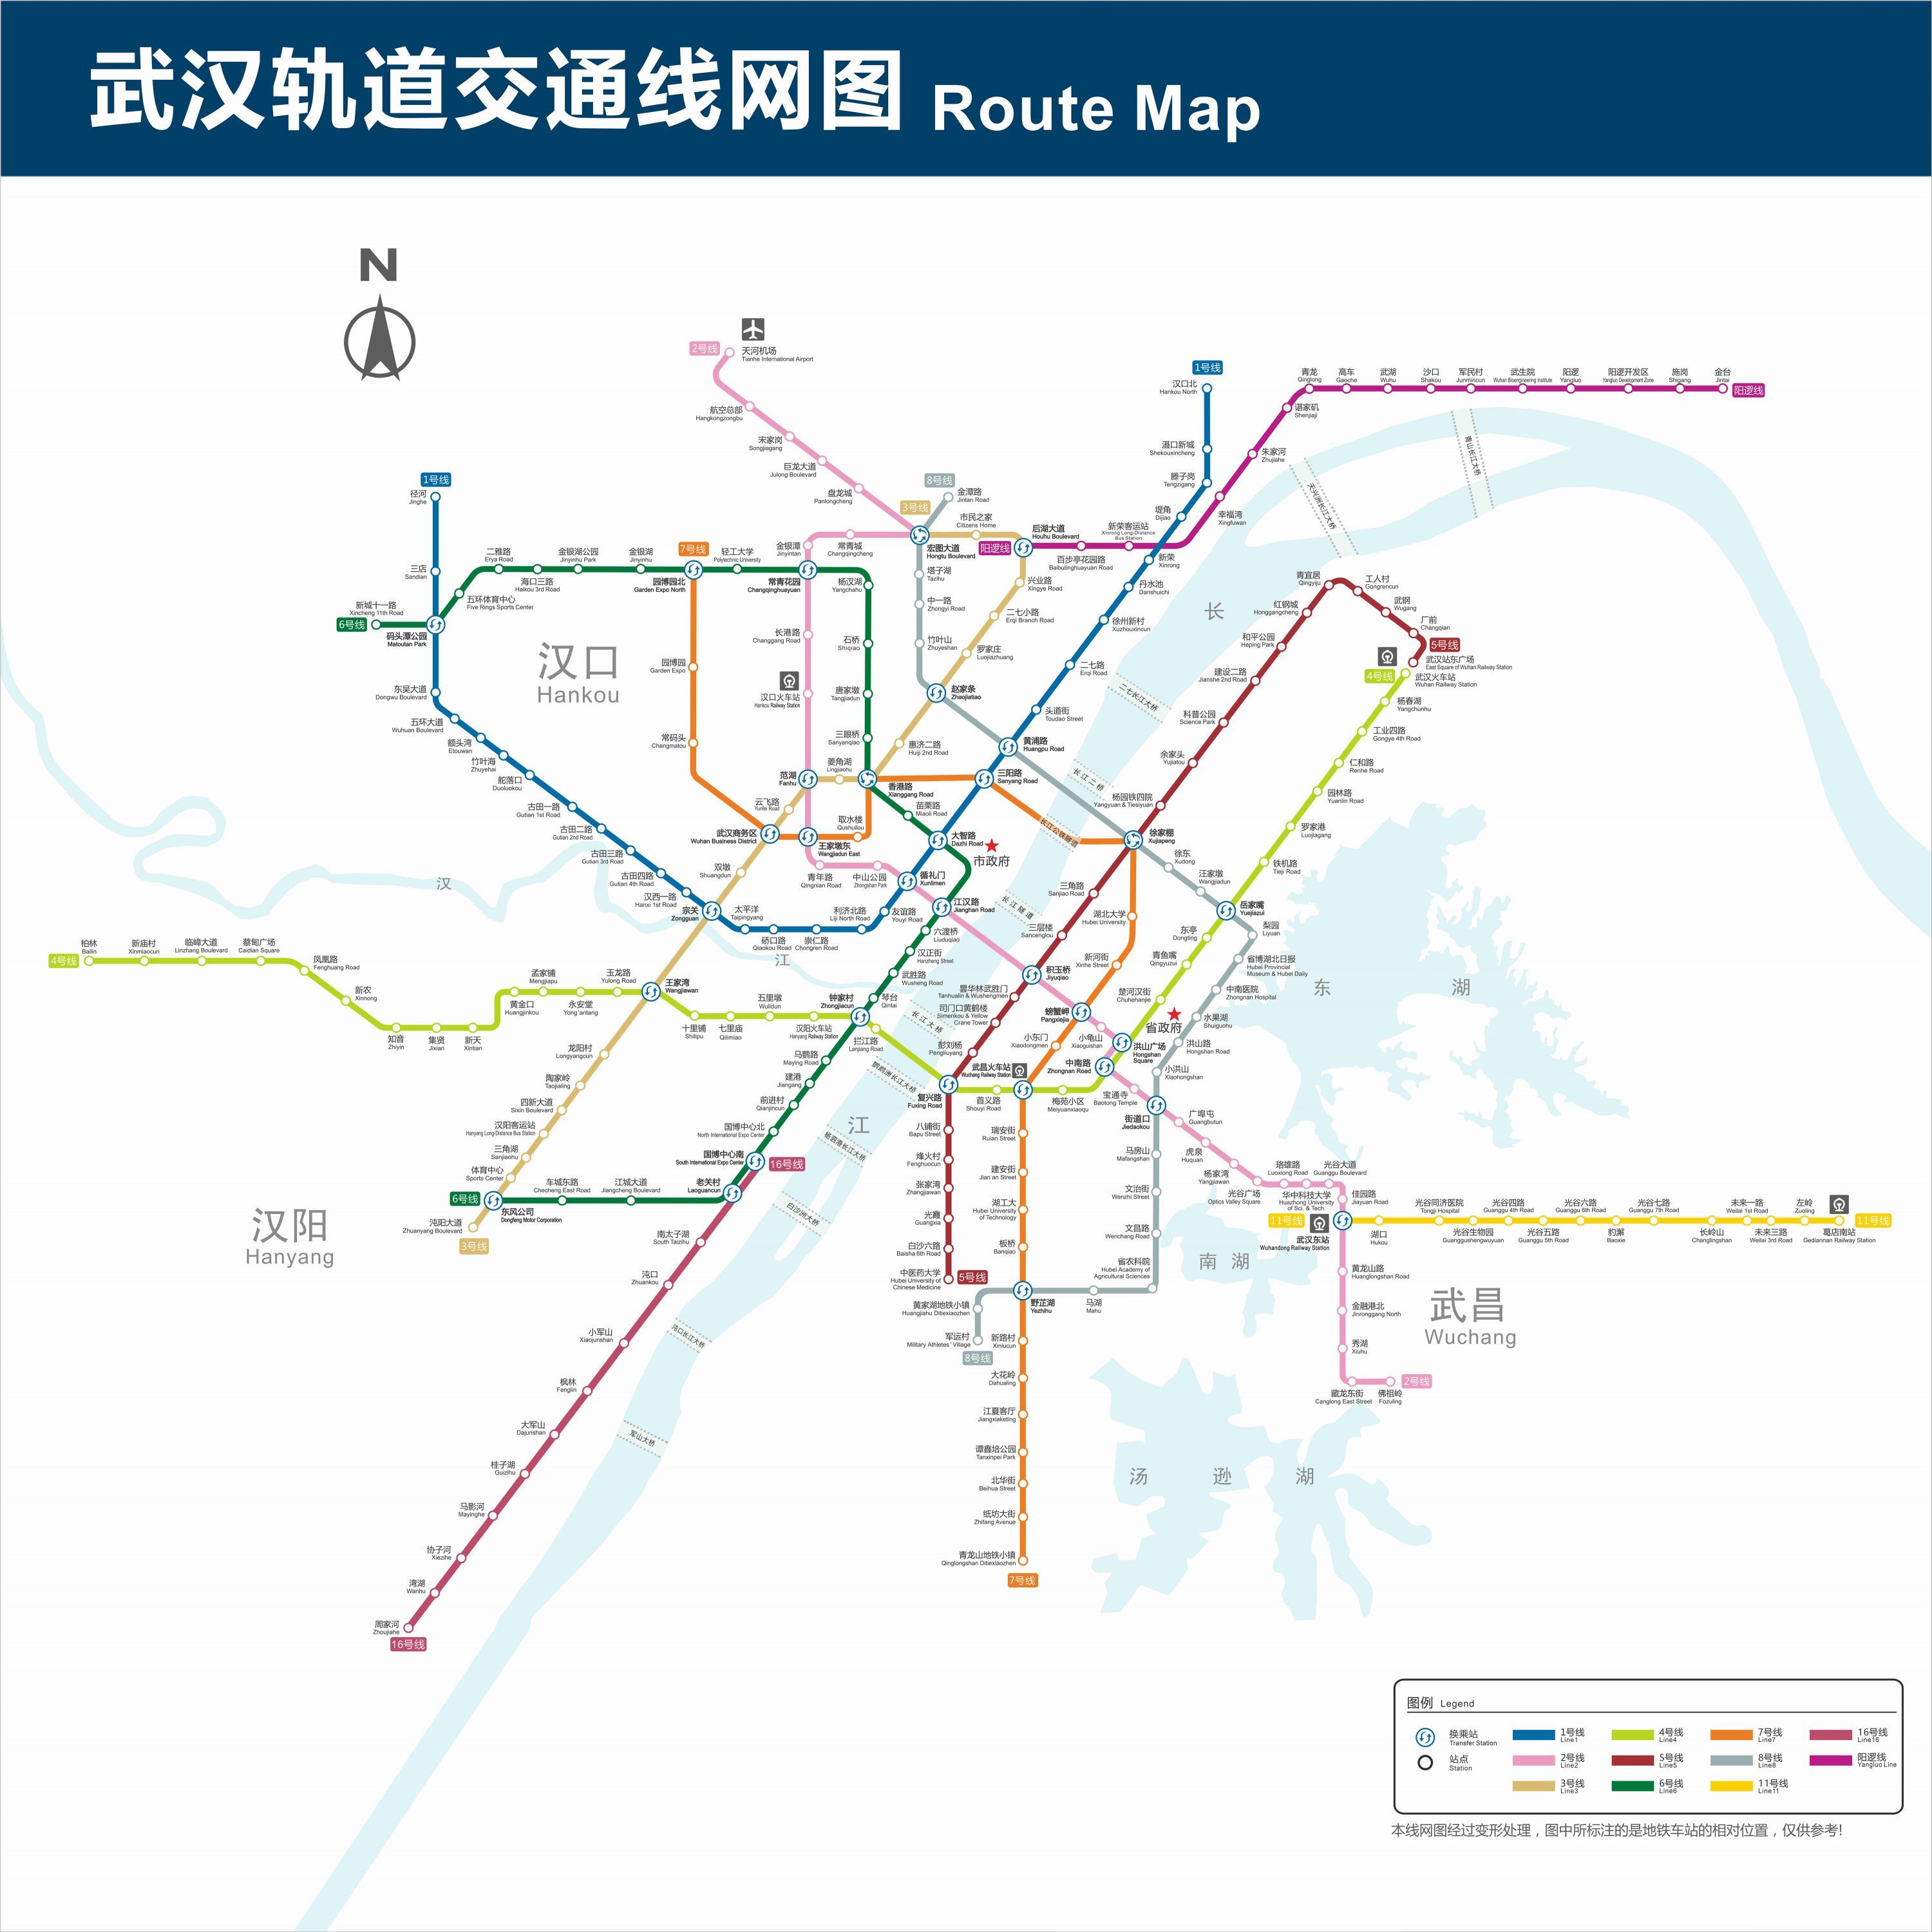 武汉地铁2020年清晰图片